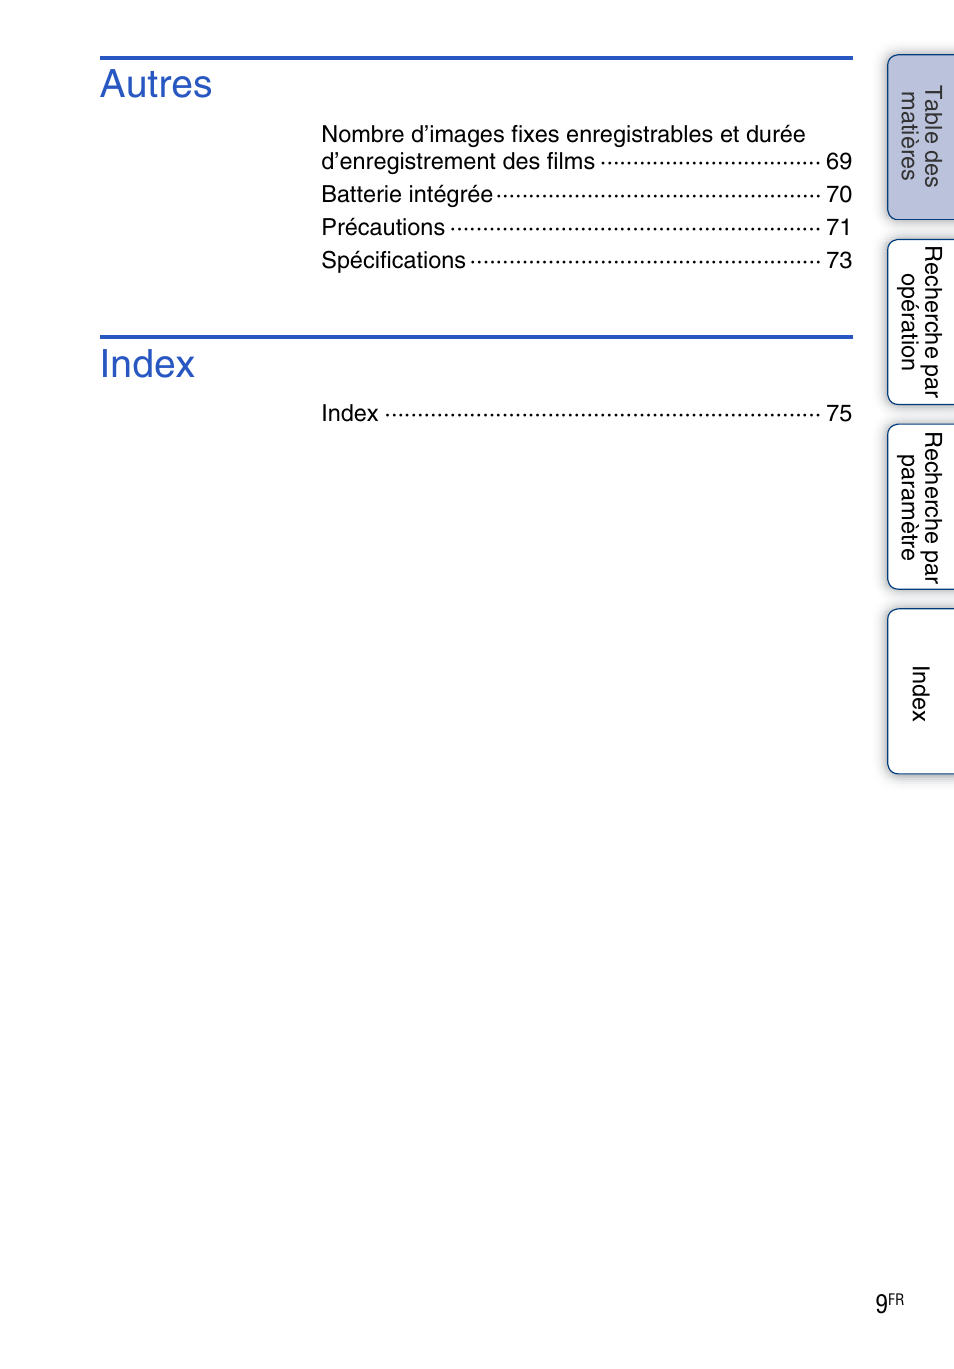 Autres, Index | Sony bloggie MHS-TS20 Manuel d'utilisation | Page 9 / 75